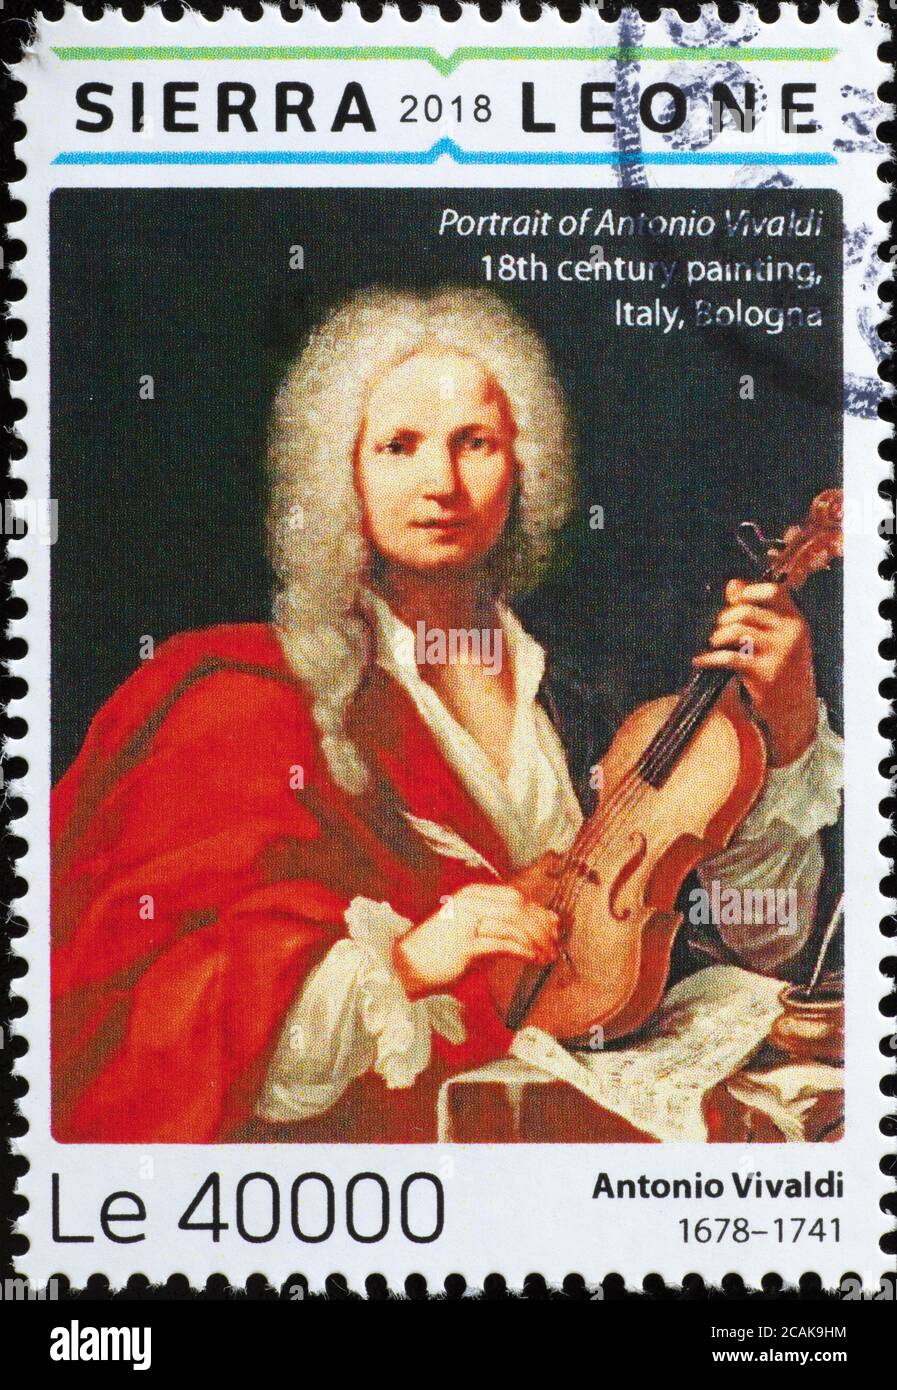 Porträt des italienischen Komponisten Antonio Vivaldi auf Briefmarke Stockfoto